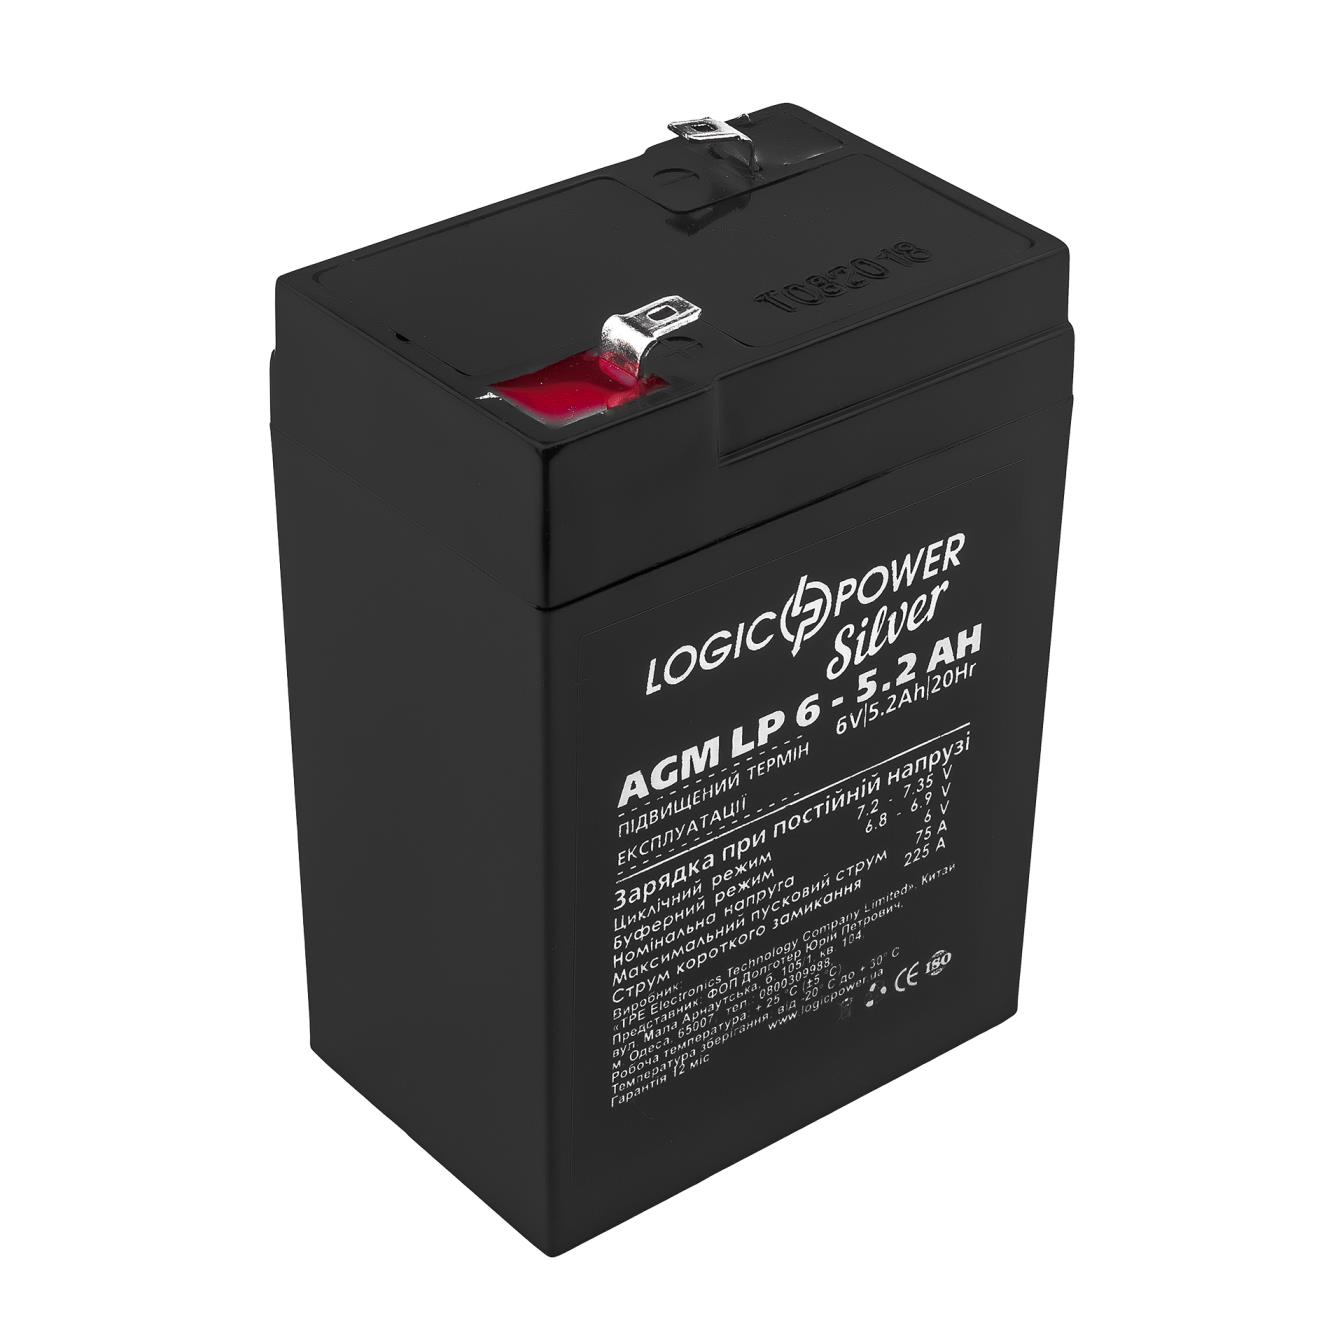 Аккумулятор 6 В LogicPower AGM LP 6V - 5.2 Ah Silver (2570)